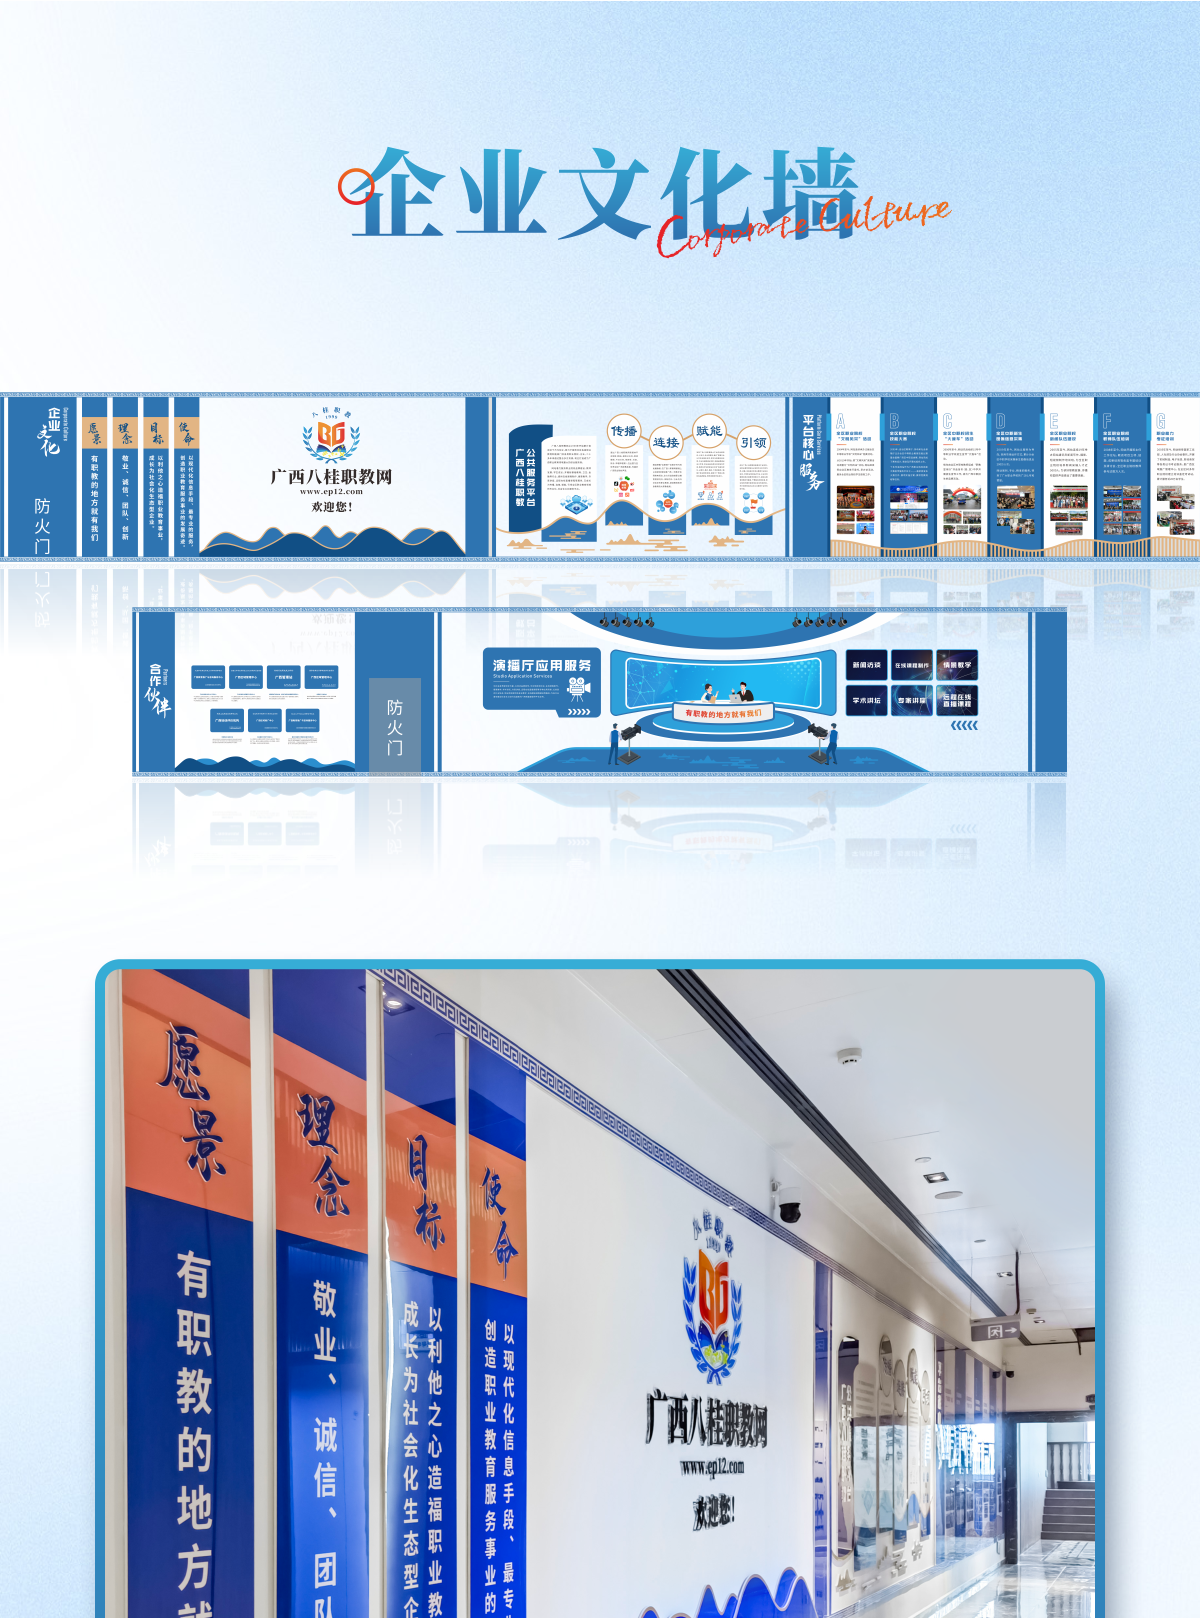 八桂职教网文化走廊企业文化墙设计制作_01.png